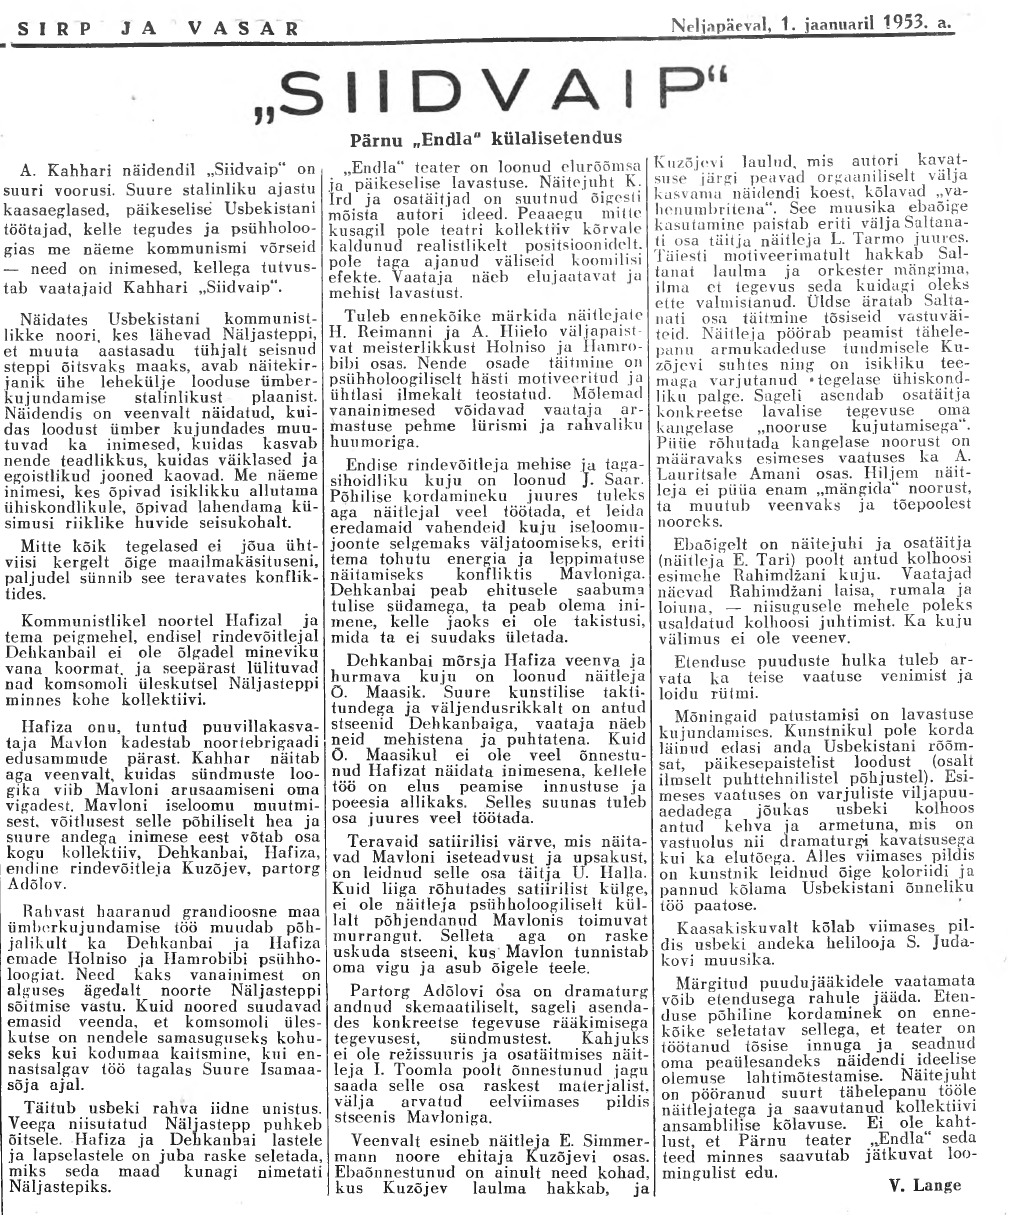 Sirp ja Vasar 1. jaan. 1953